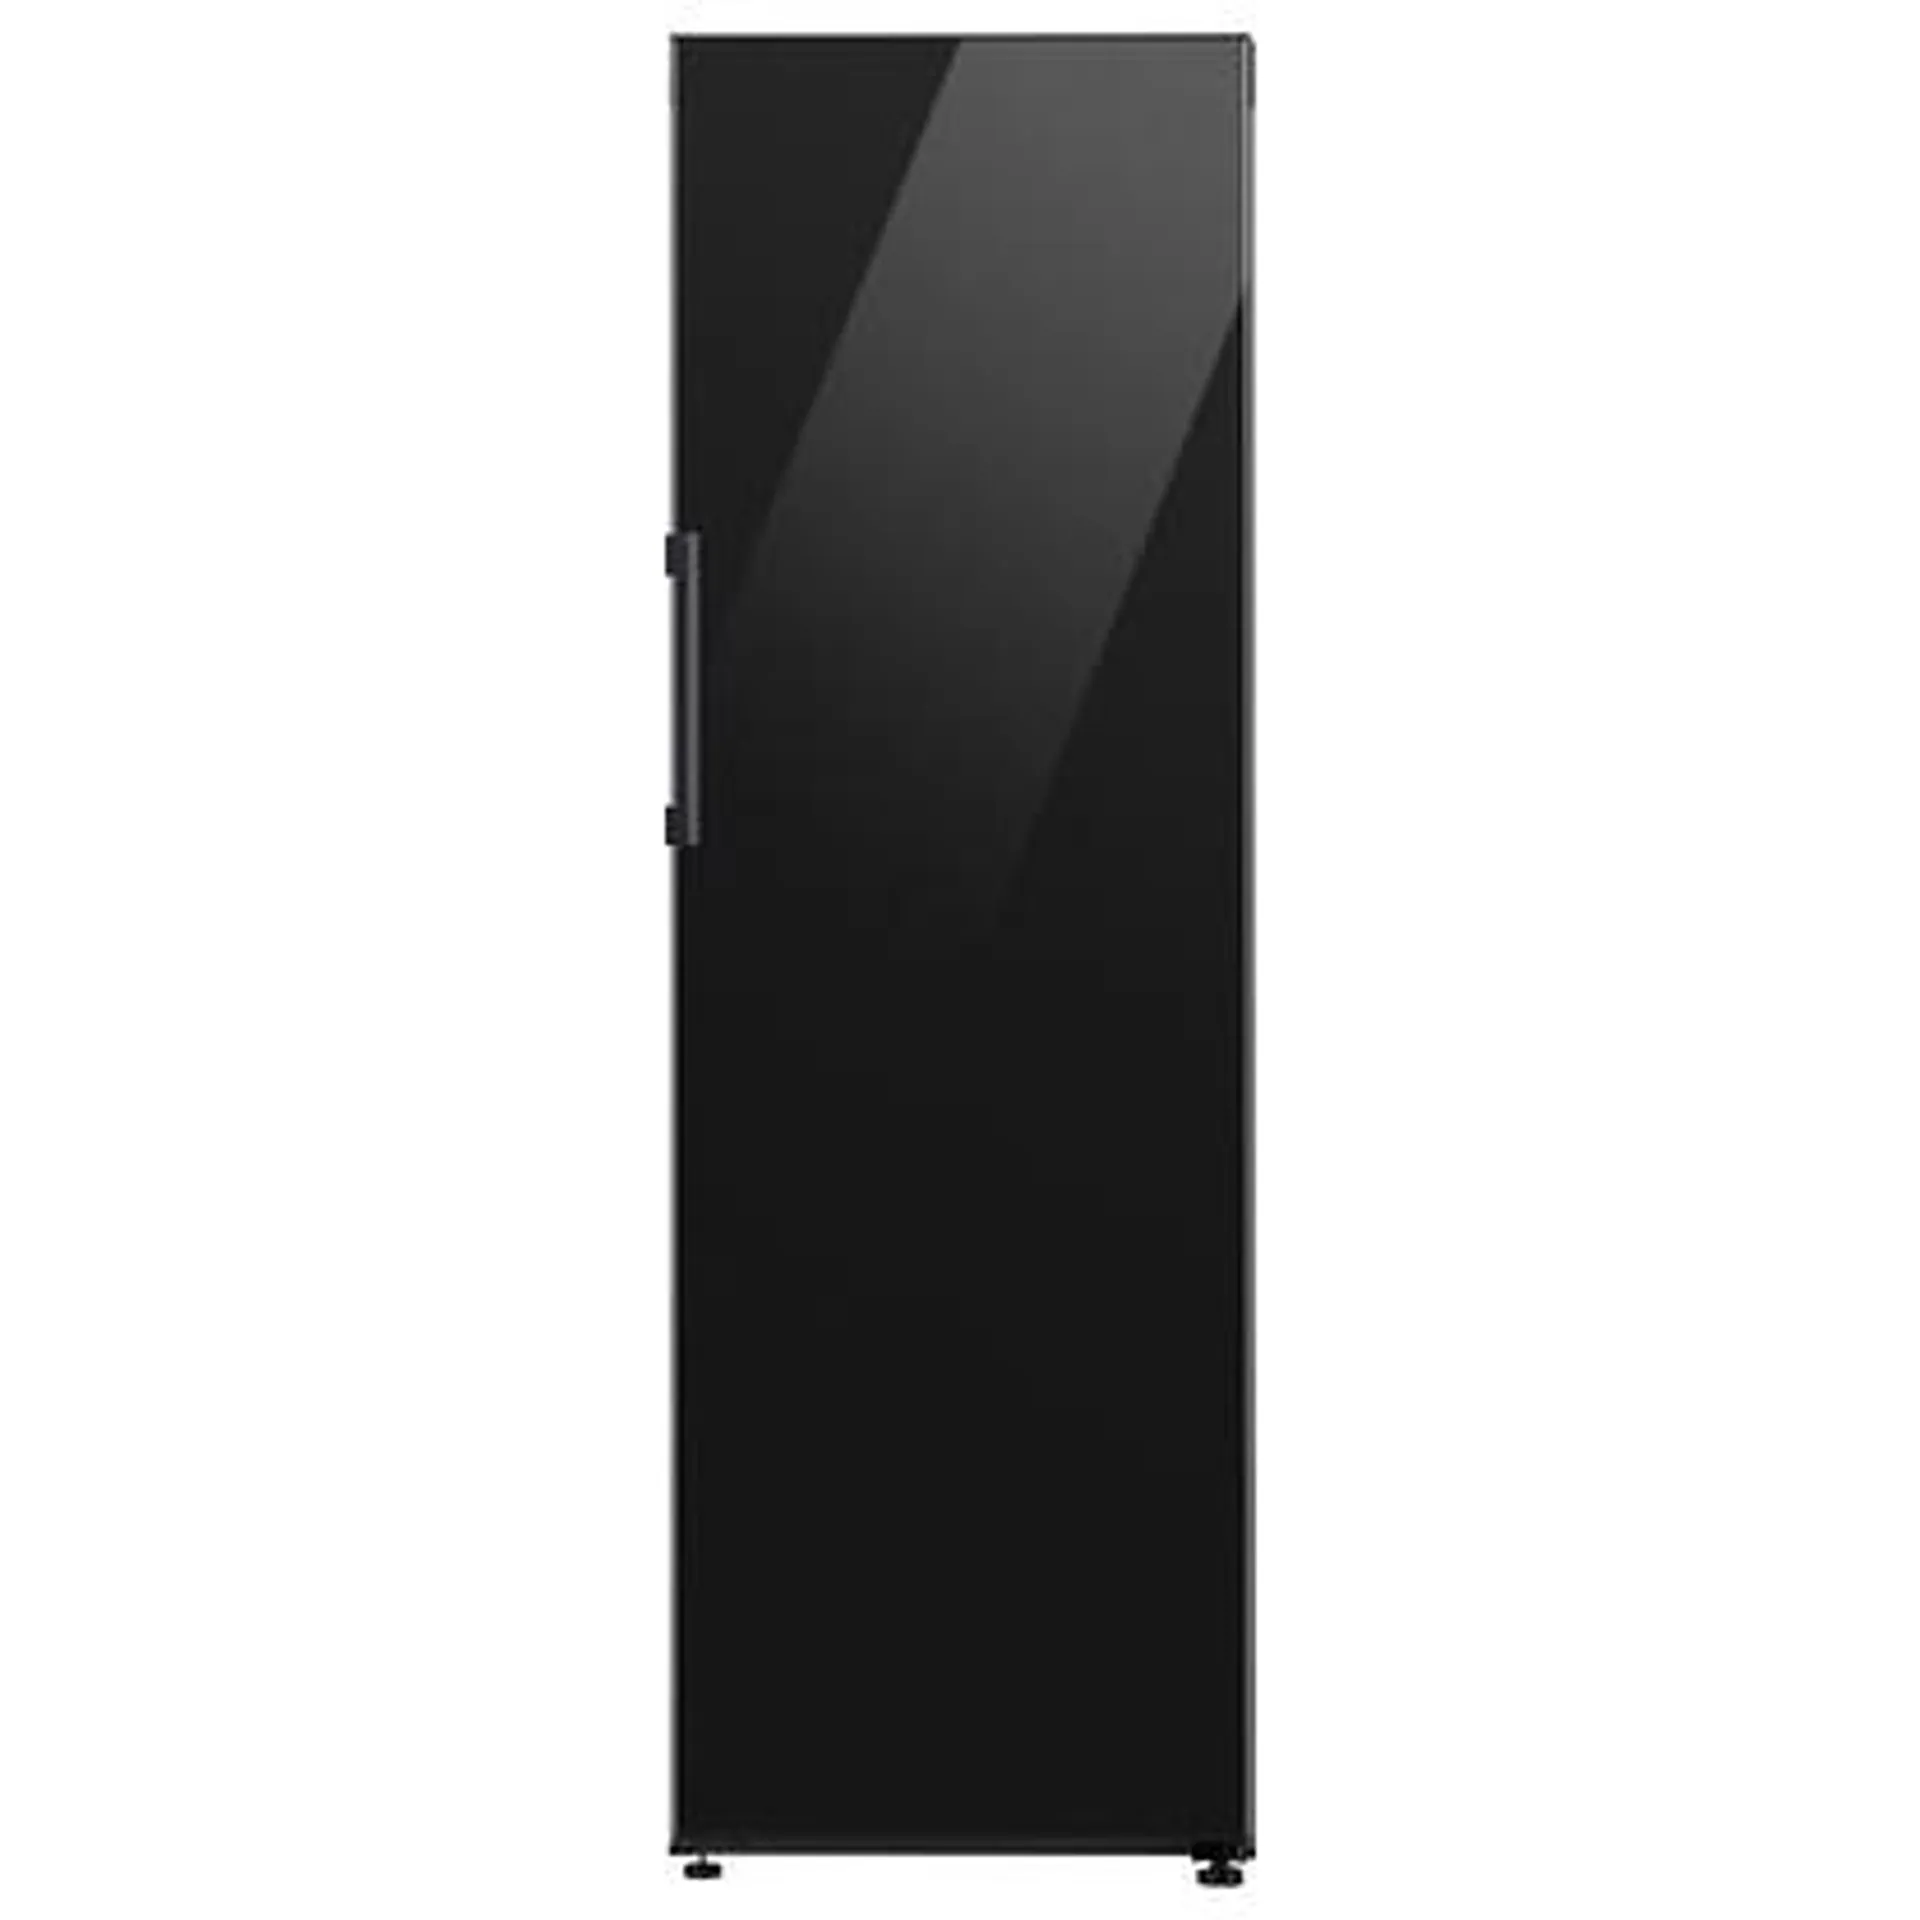 Samsung RR39C76K322 60cm Freestanding Larder Fridge – BLACK